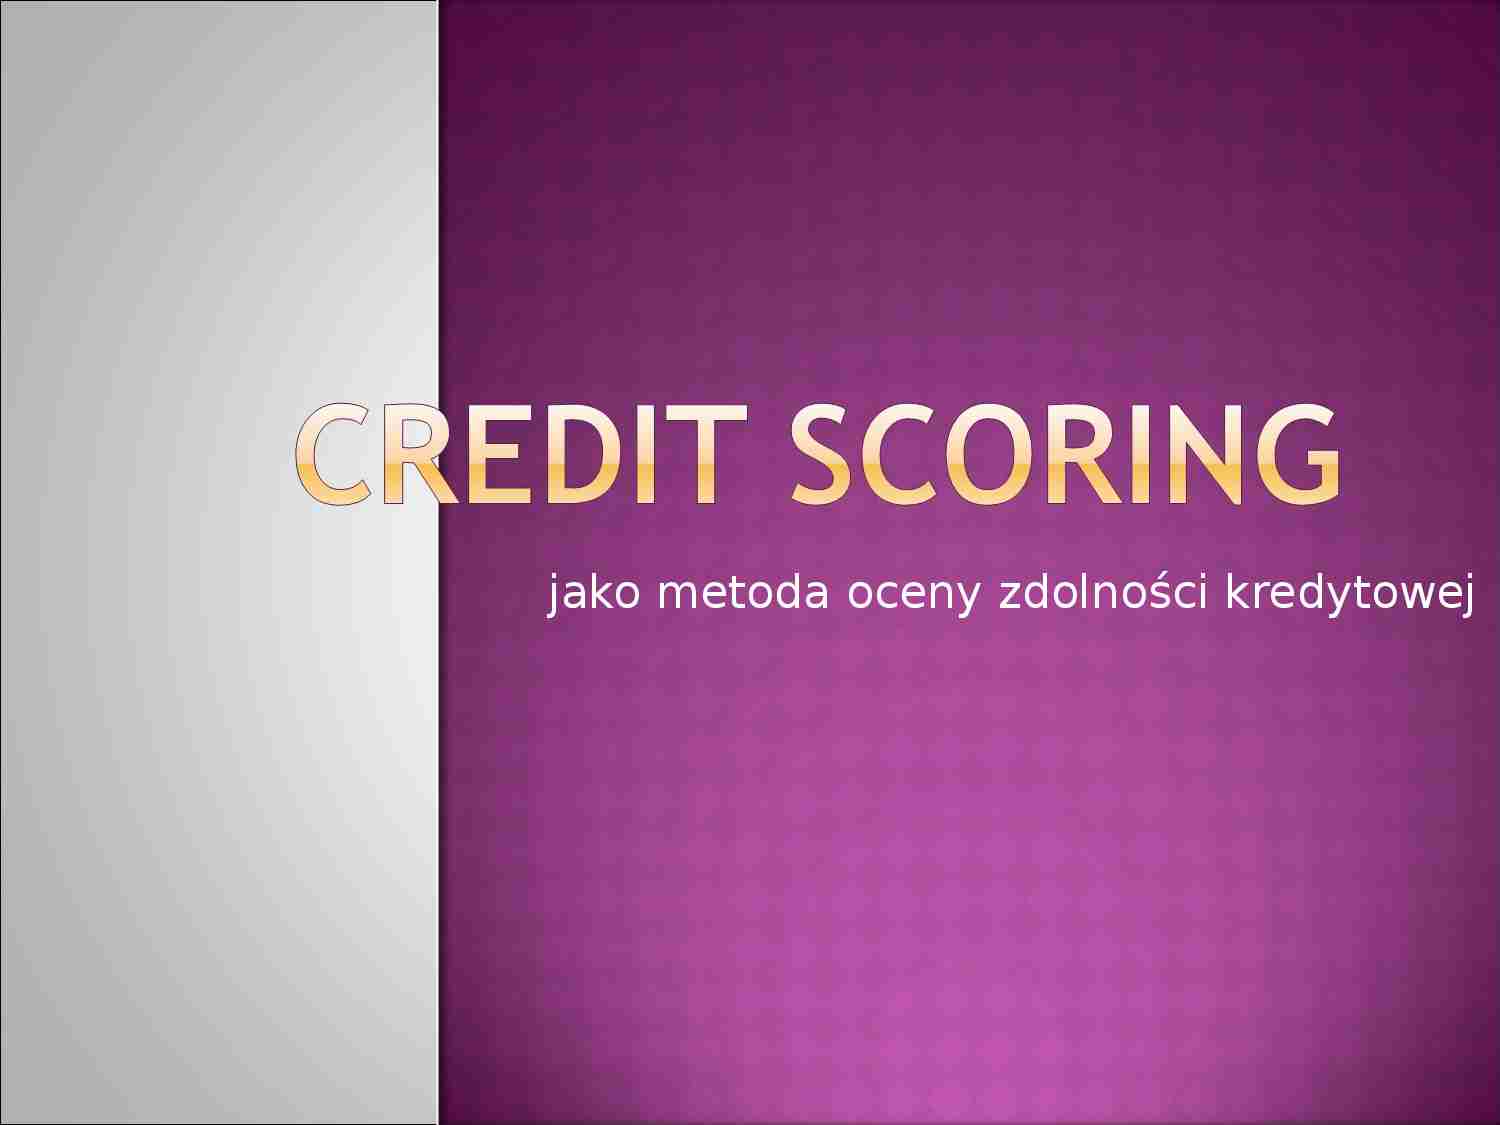 Credit scoring jako metoda oceny zdolności kredytowej - strona 1